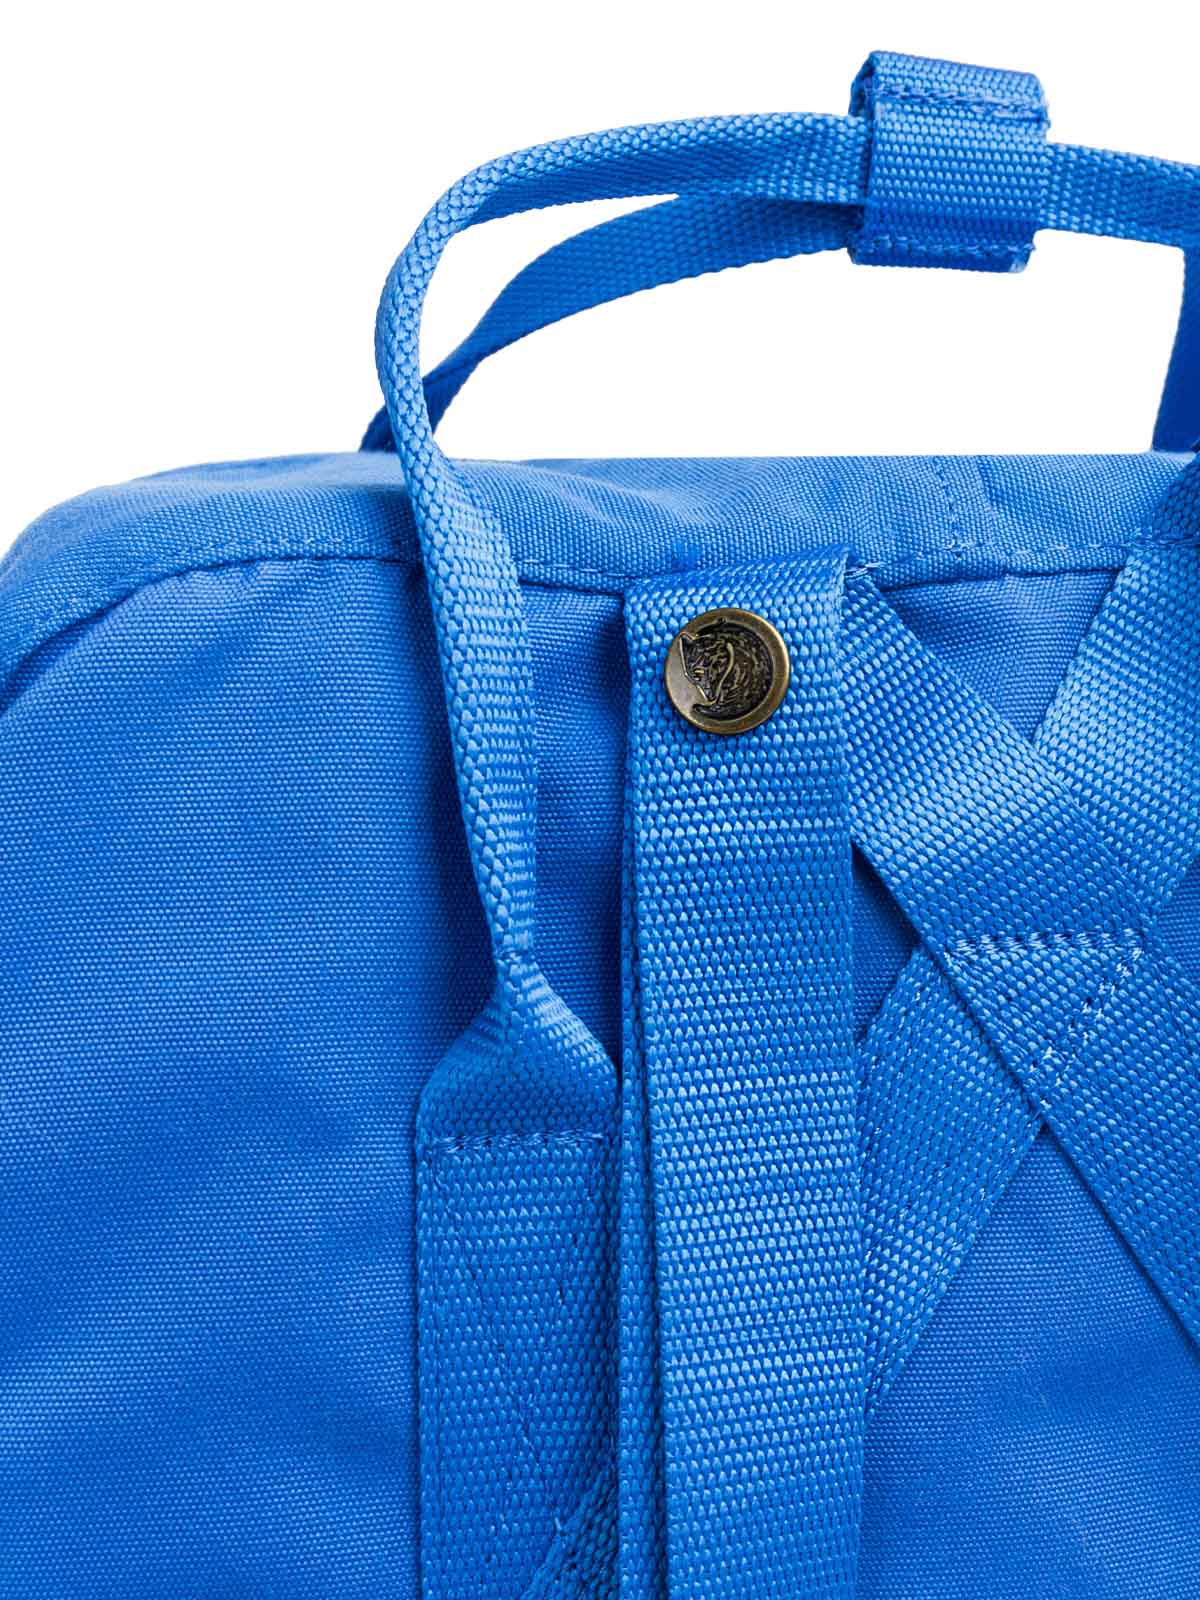 Plecak Re - Kanken UN Blue F23548-525